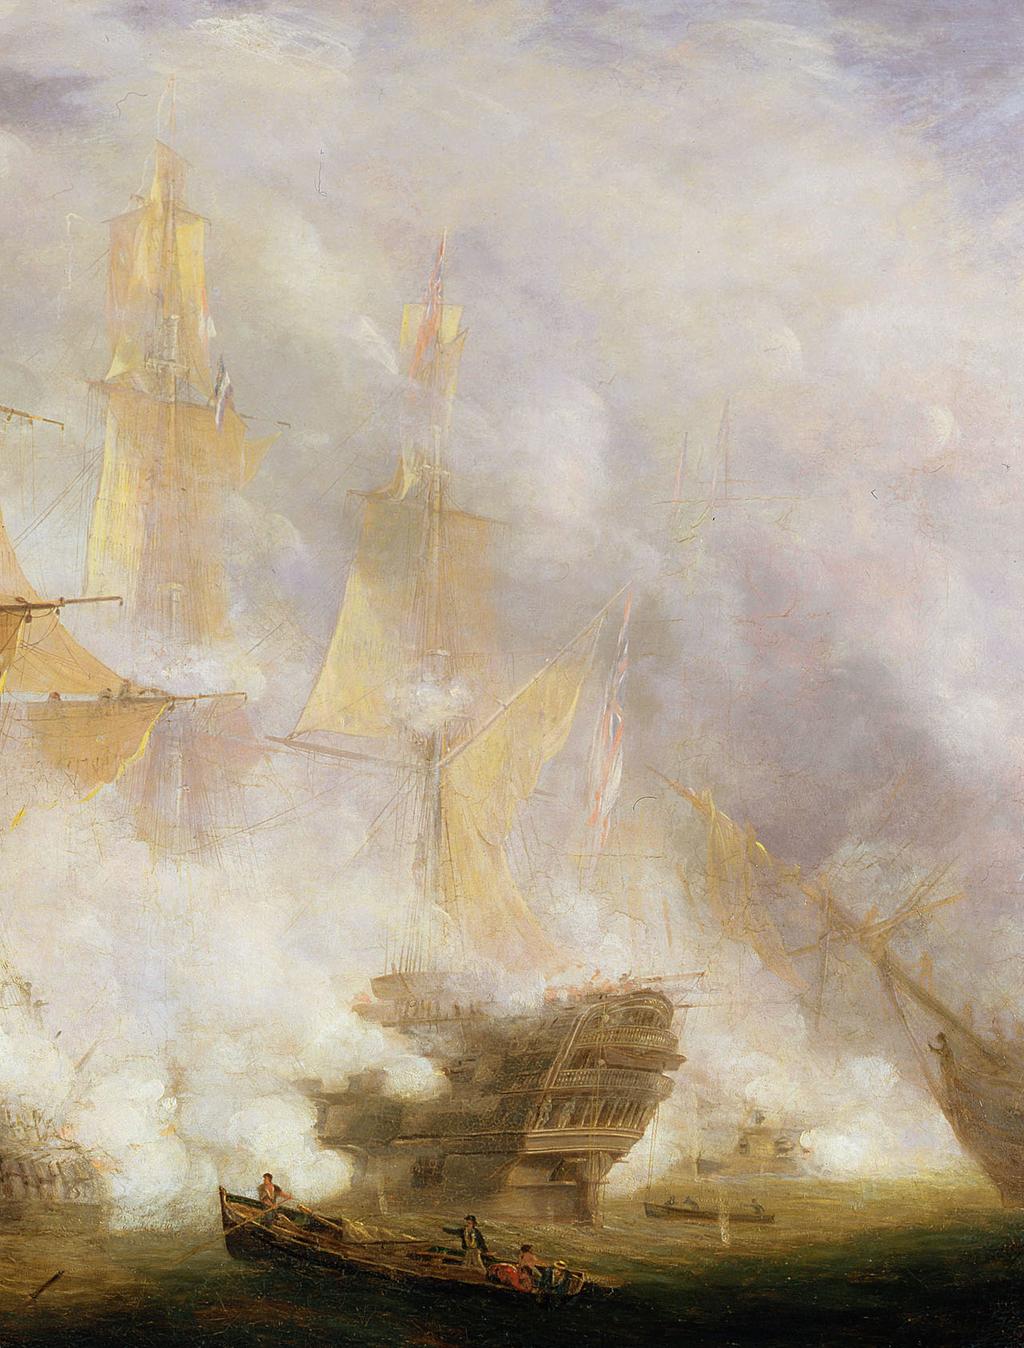 KAPITEL II DAS WELTREICH Herren der Meere In der Schlacht von Trafalgar rettete